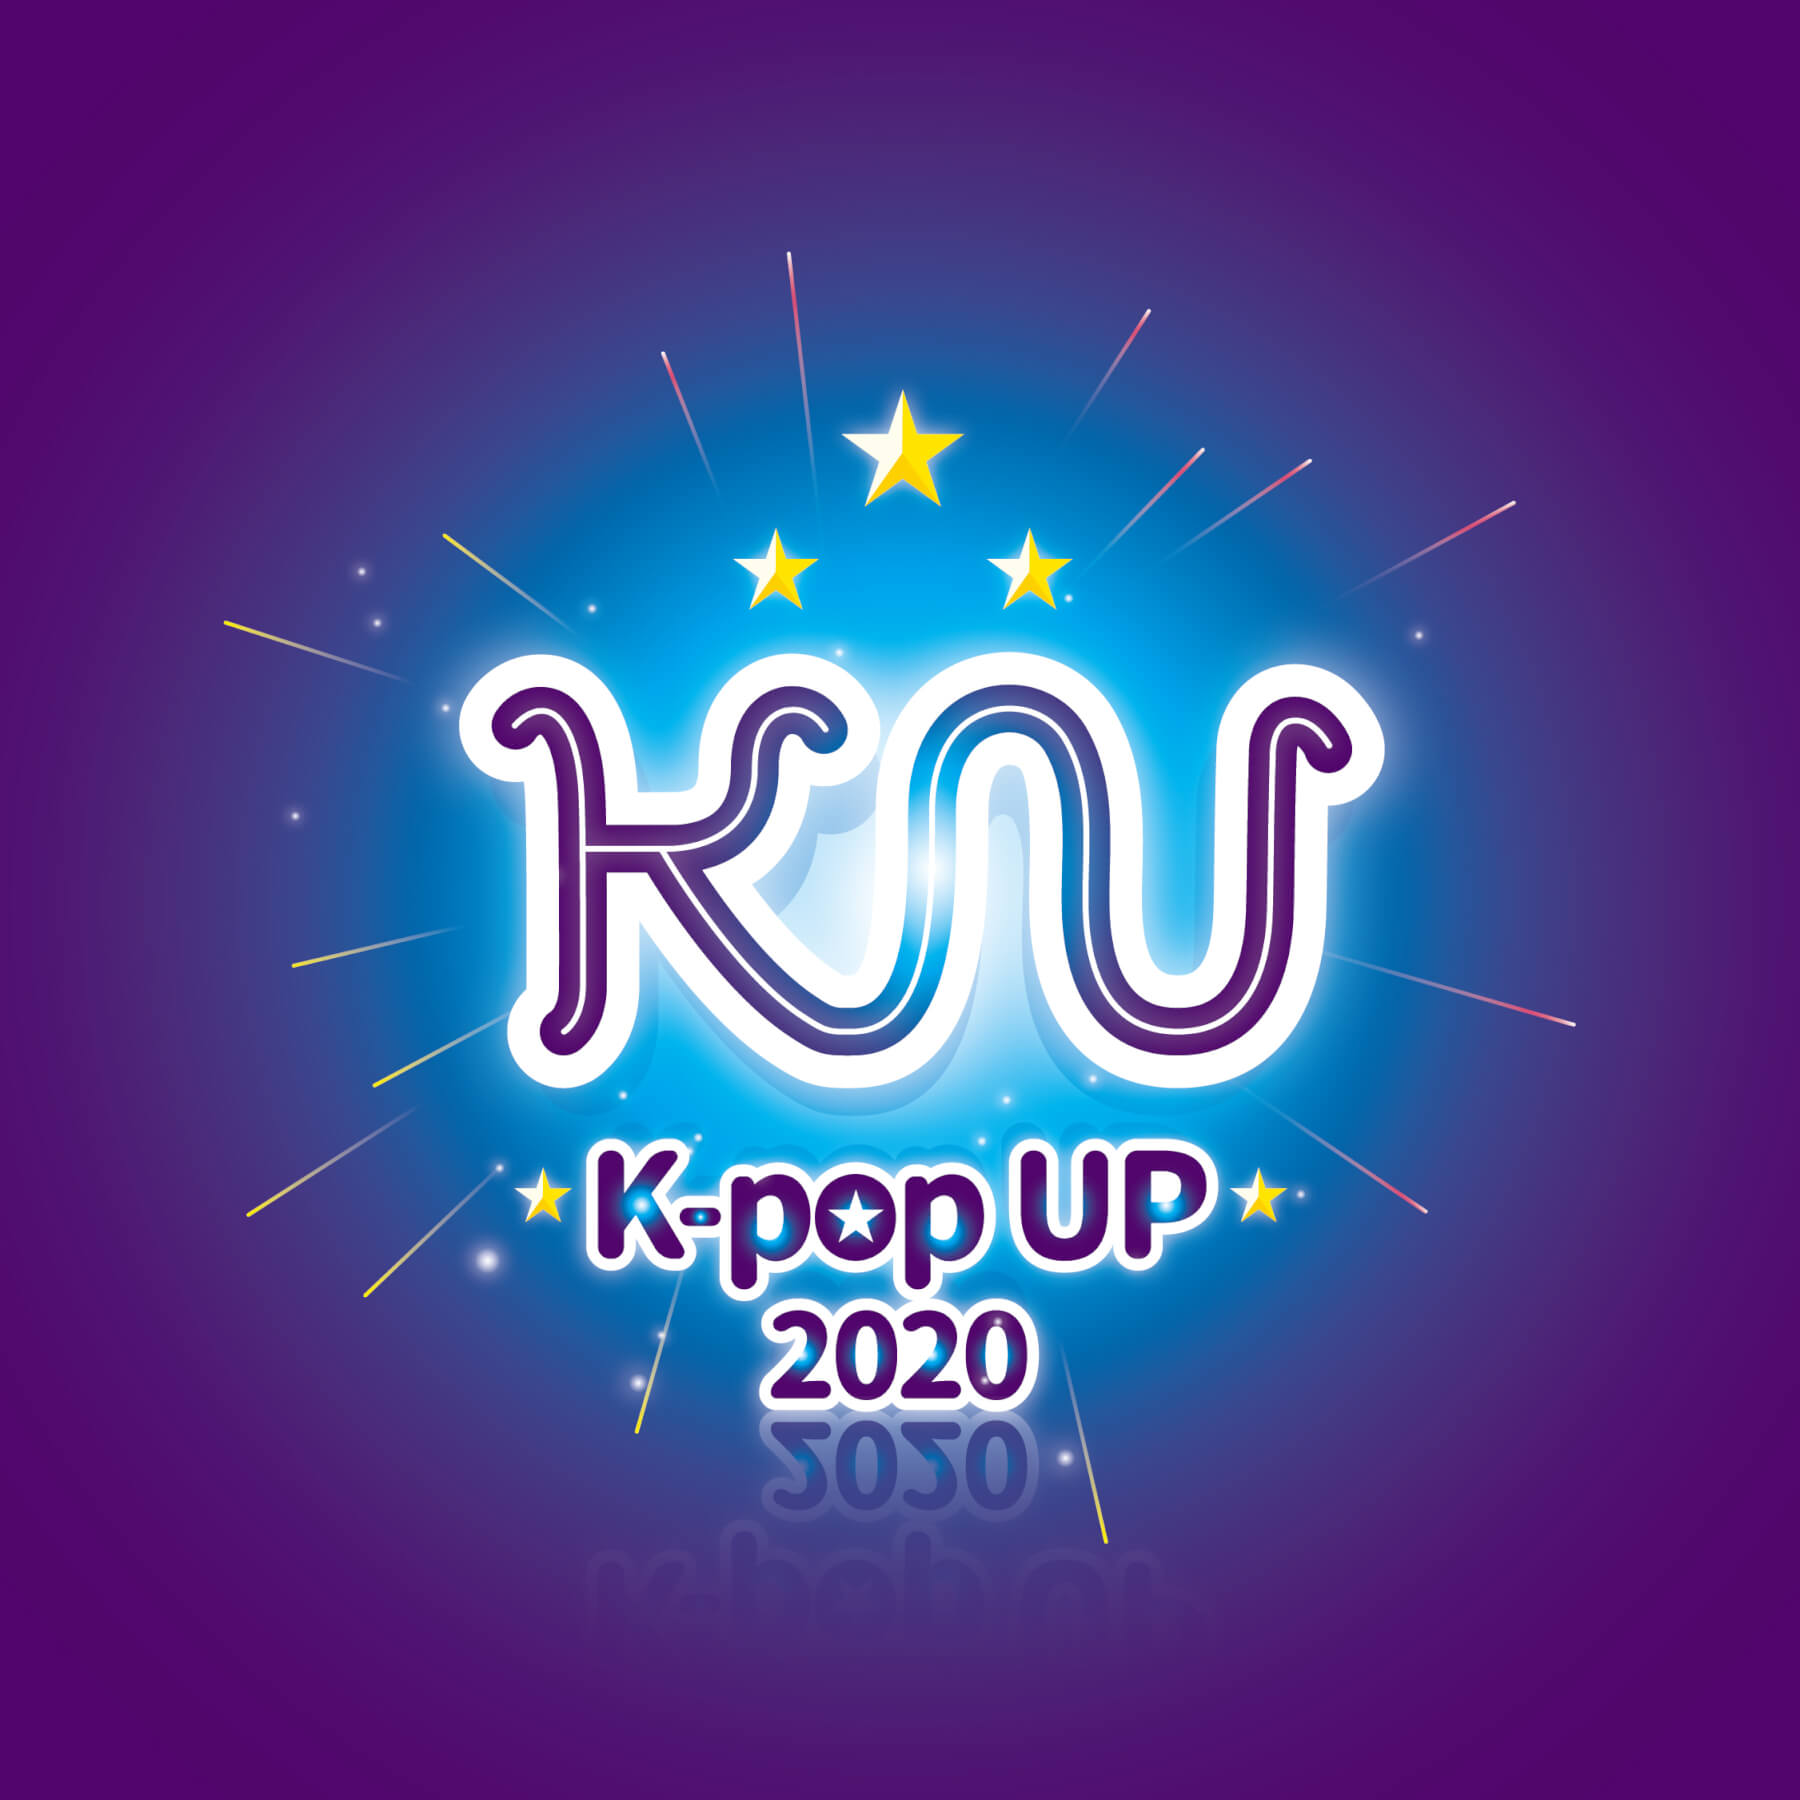 K-popUP 2020